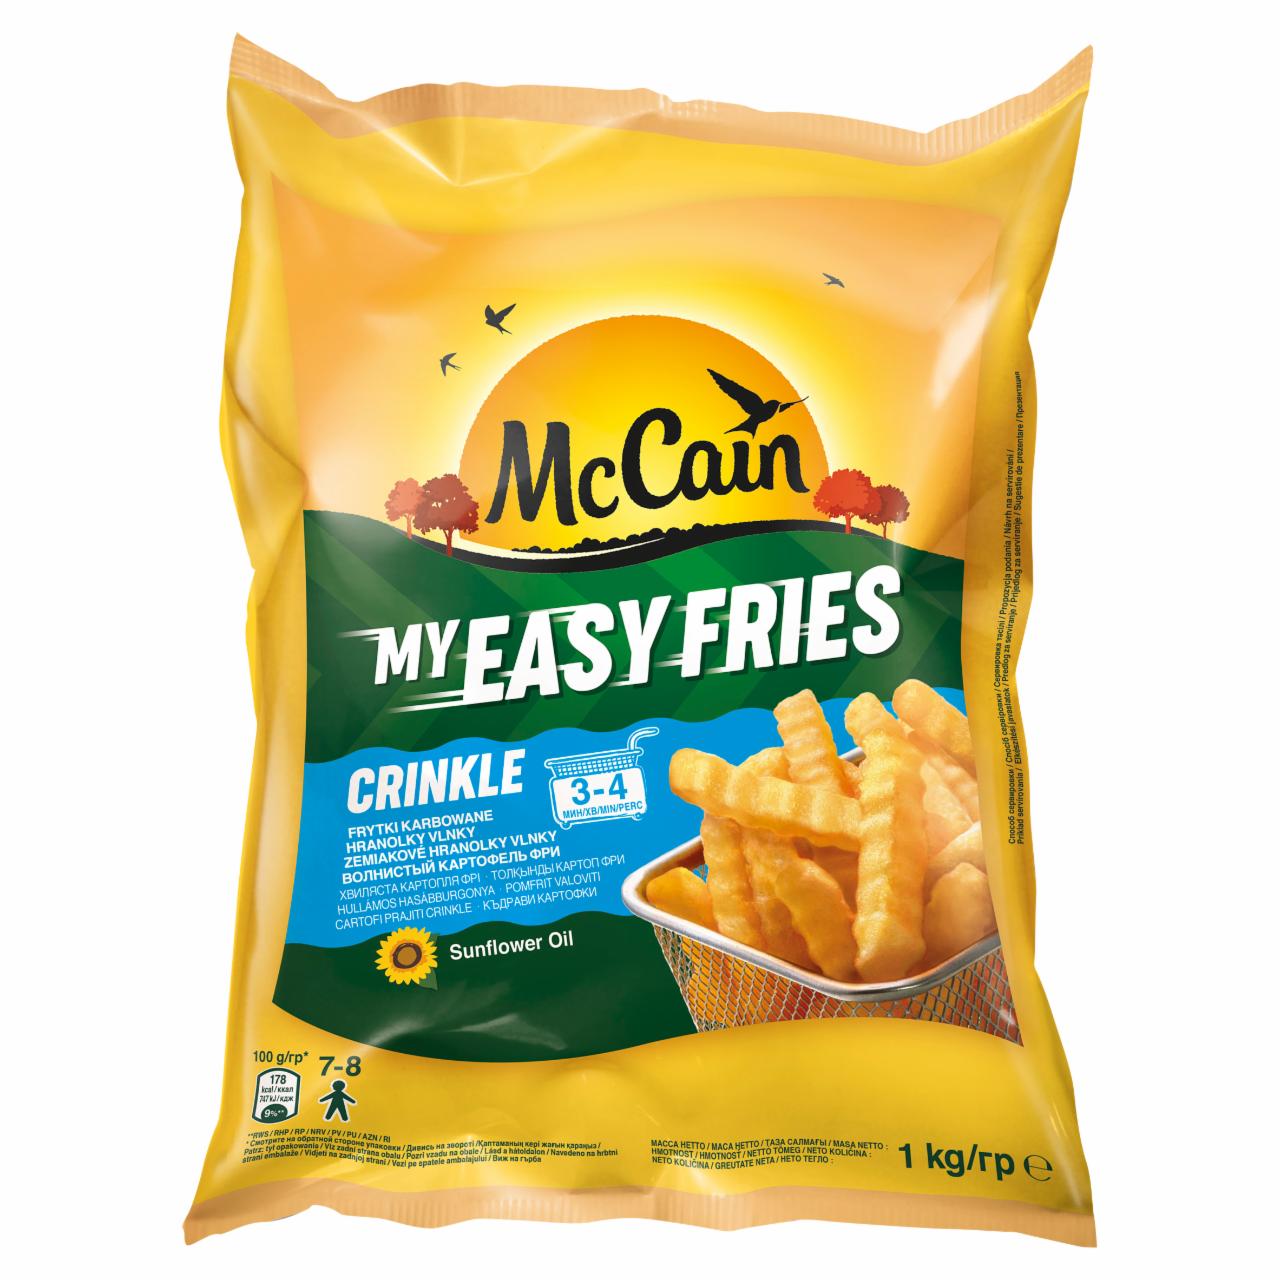 Zdjęcia - McCain My Easy Fries Crinkle Frytki karbowane 1 kg